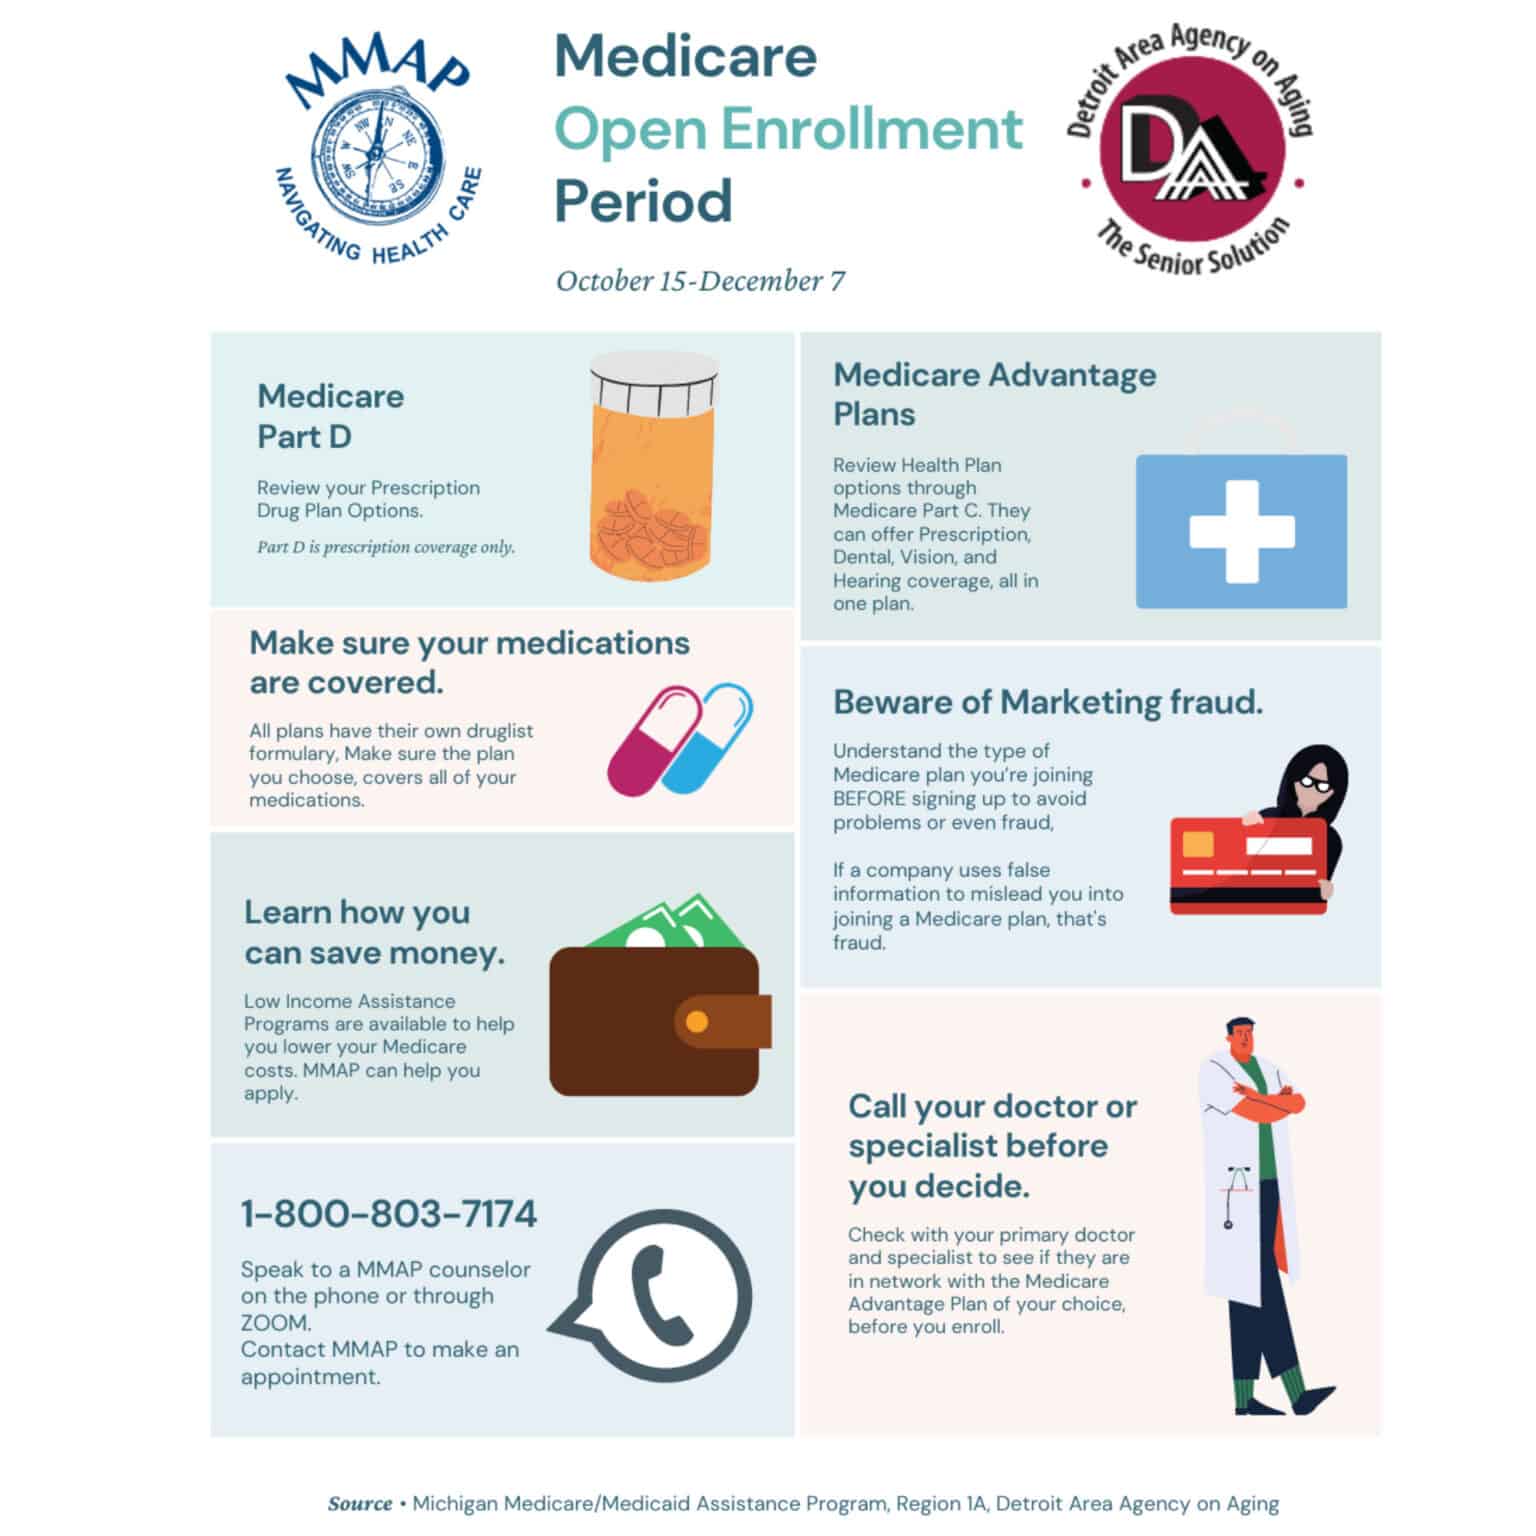 Medicare Open Enrollment Period (MMAP)